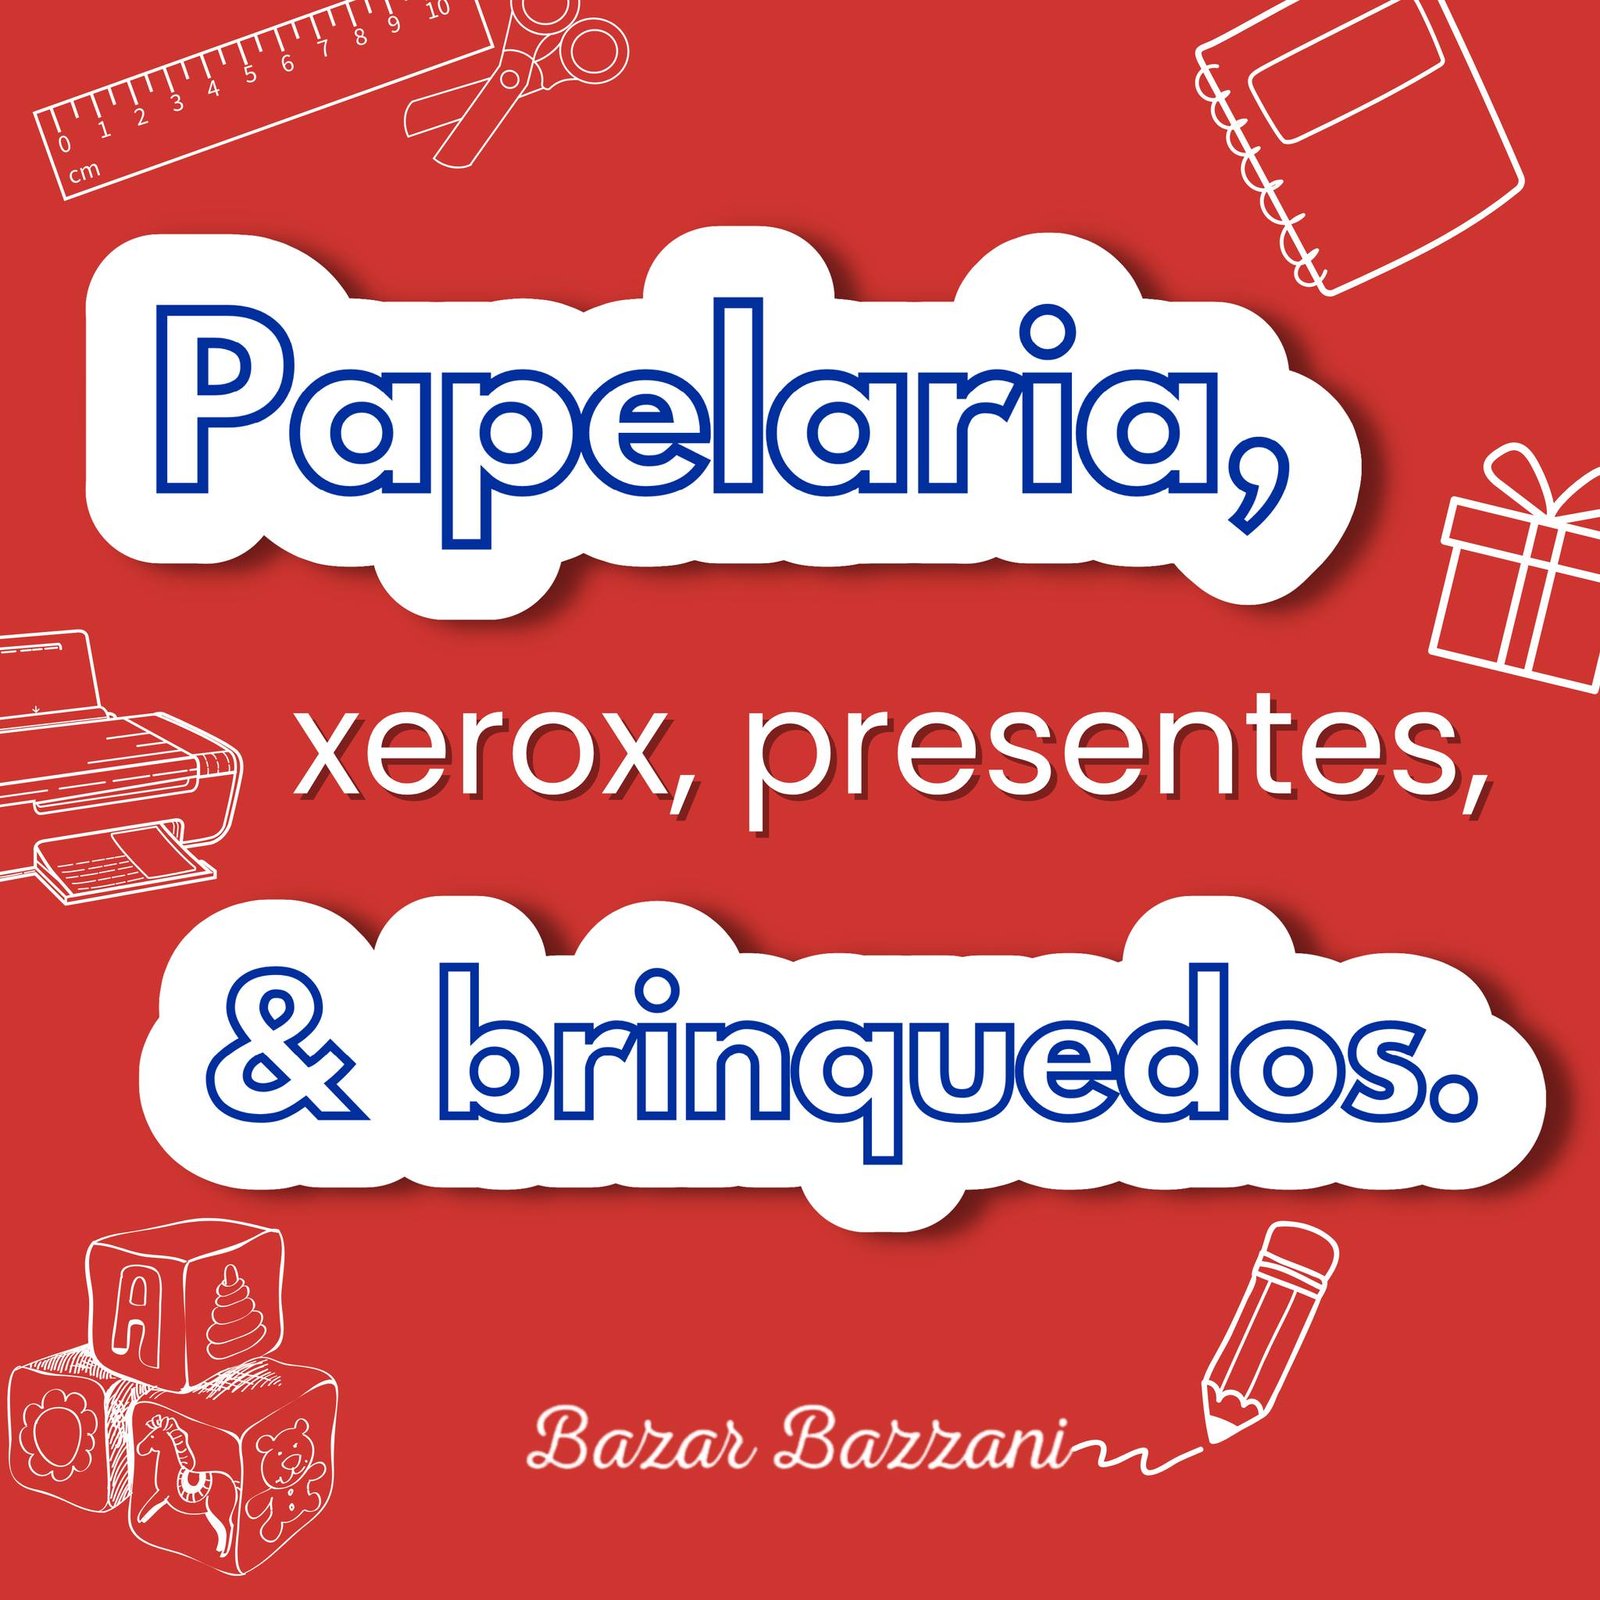 Bazar Bazzani - Papelaria - Xerox - Presentes & Brinquedos